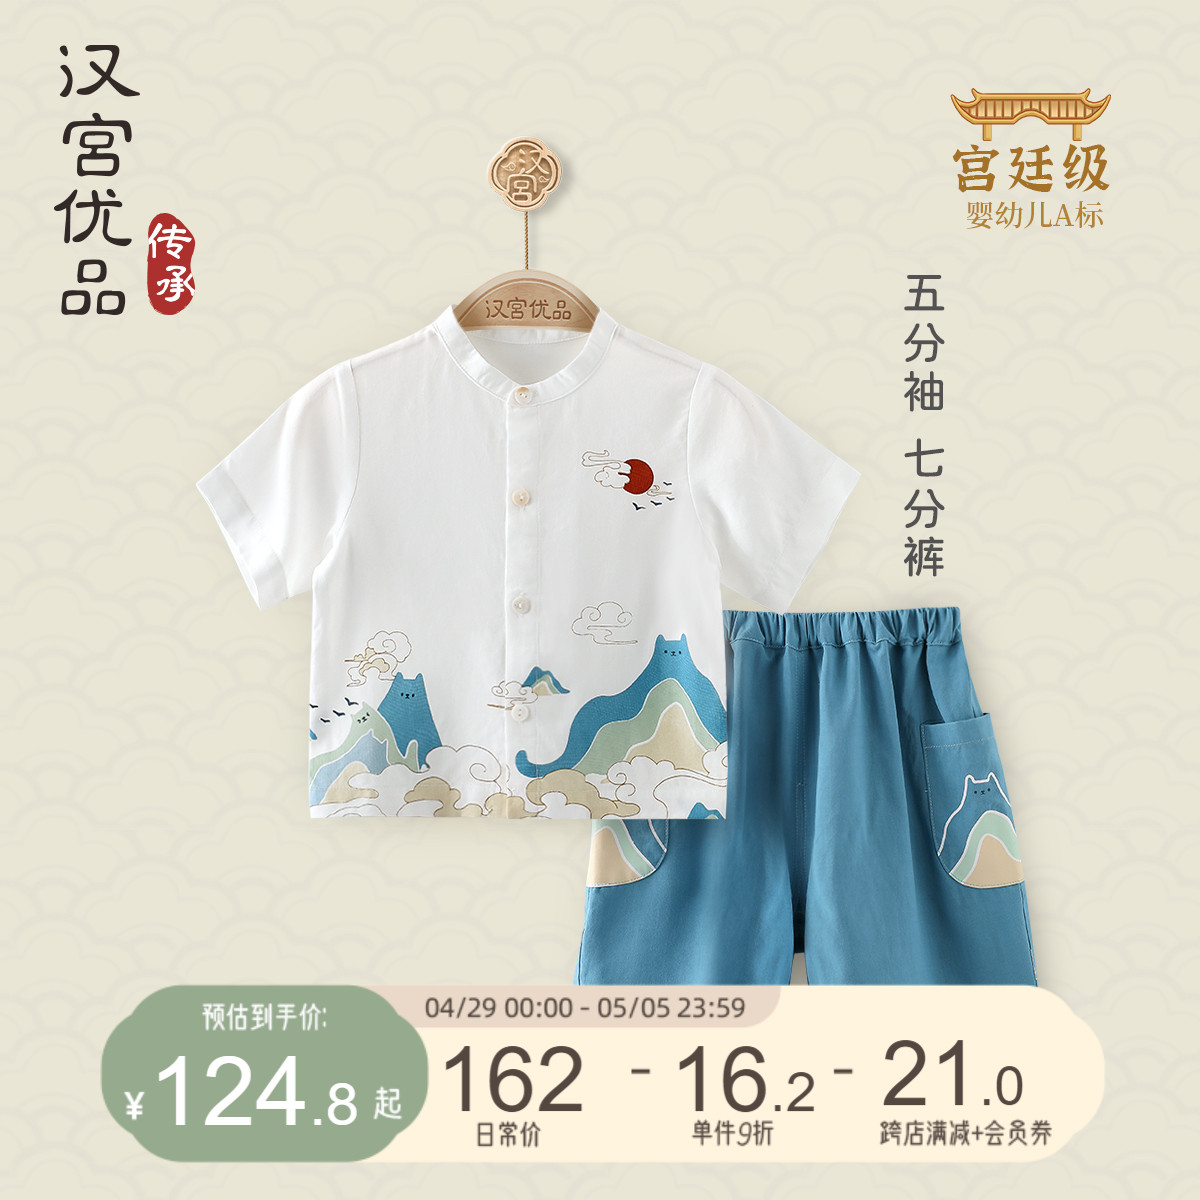 男童套装夏季短袖衬衫七分裤宝宝两件套夏装中国风分体婴幼儿衣服